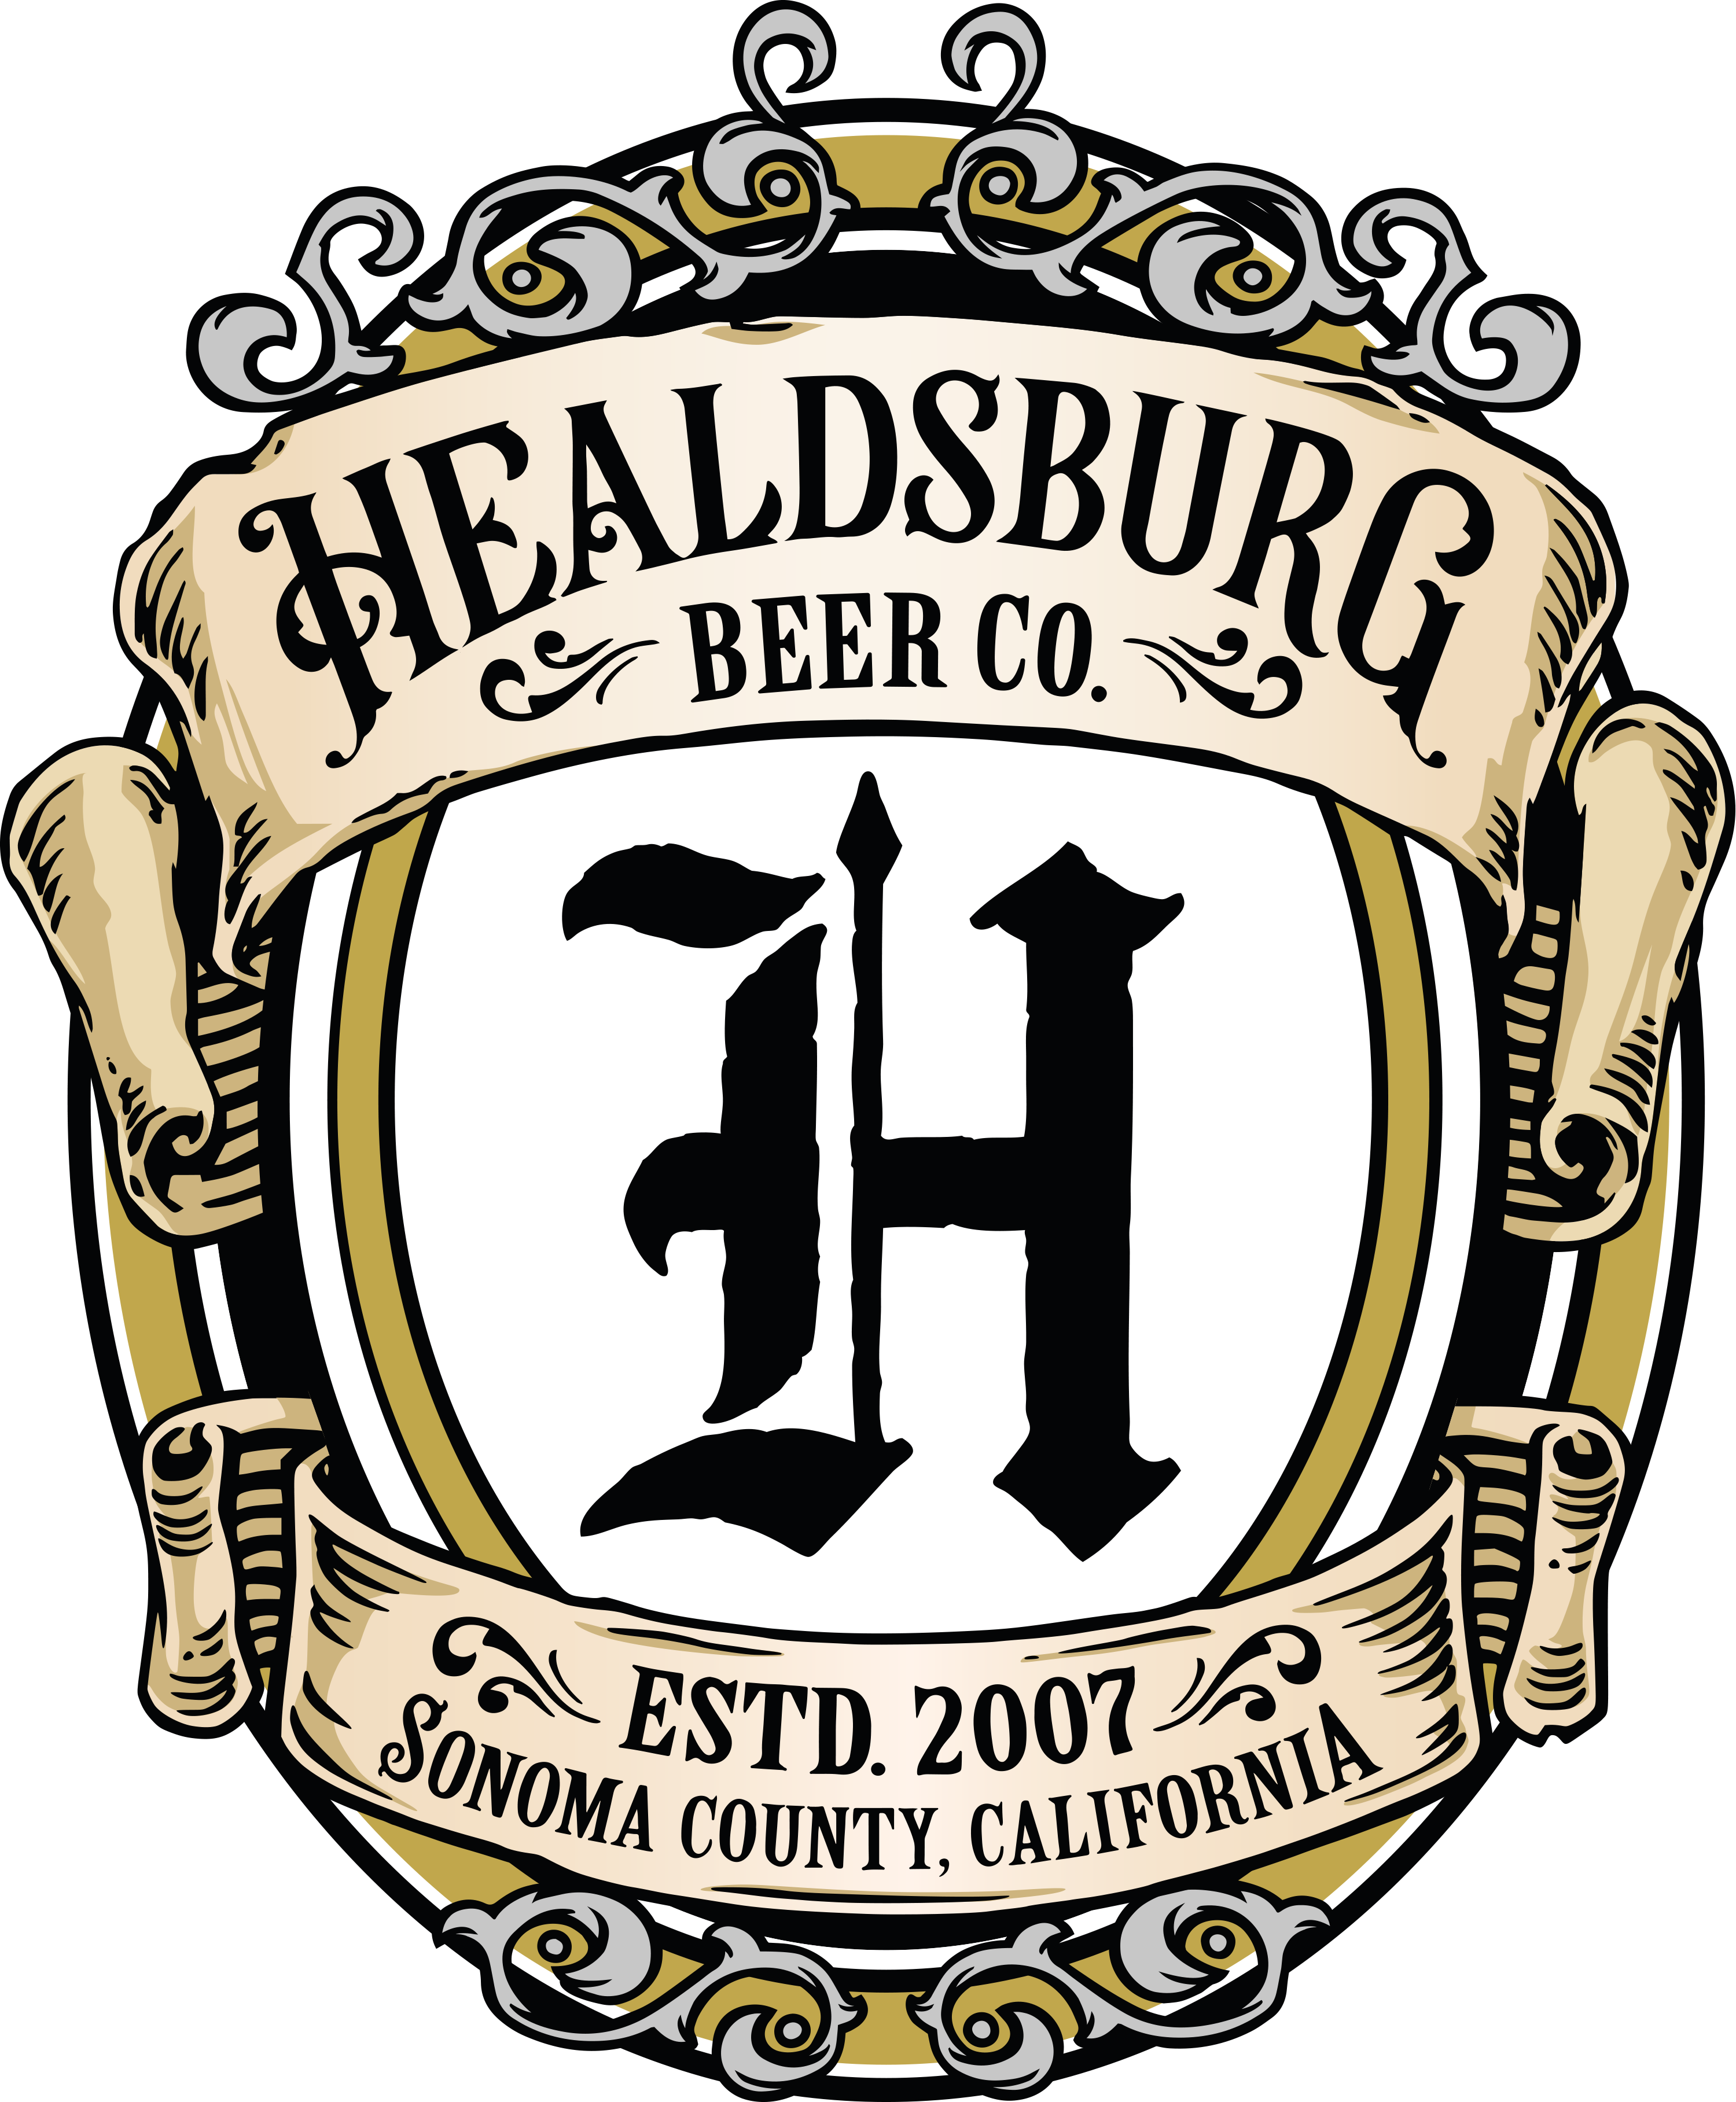 Healdsburg beer co.